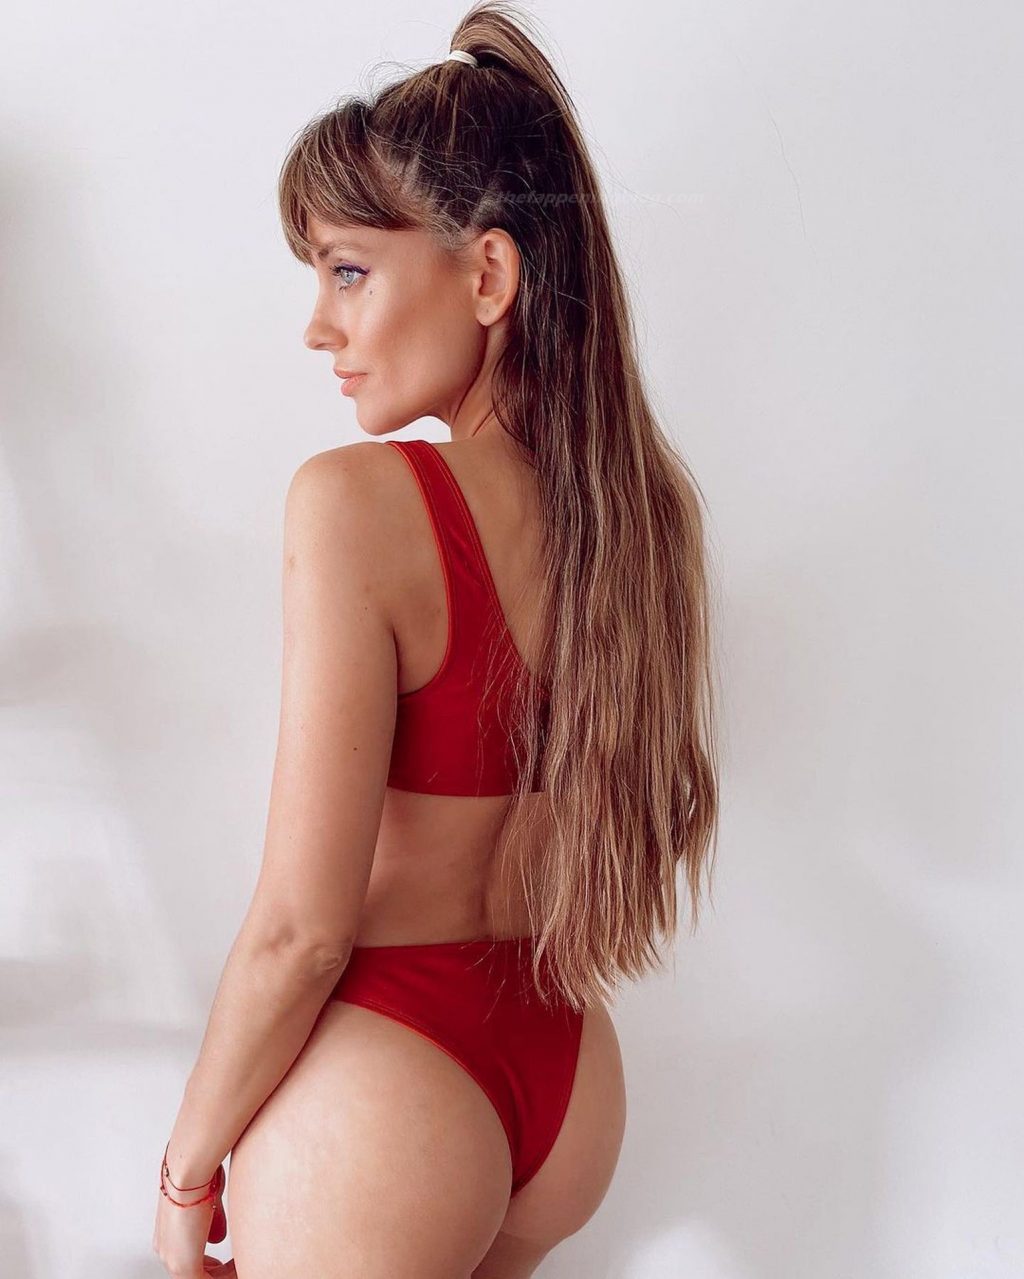 Melina Lezcano Sexy (23 Photos)